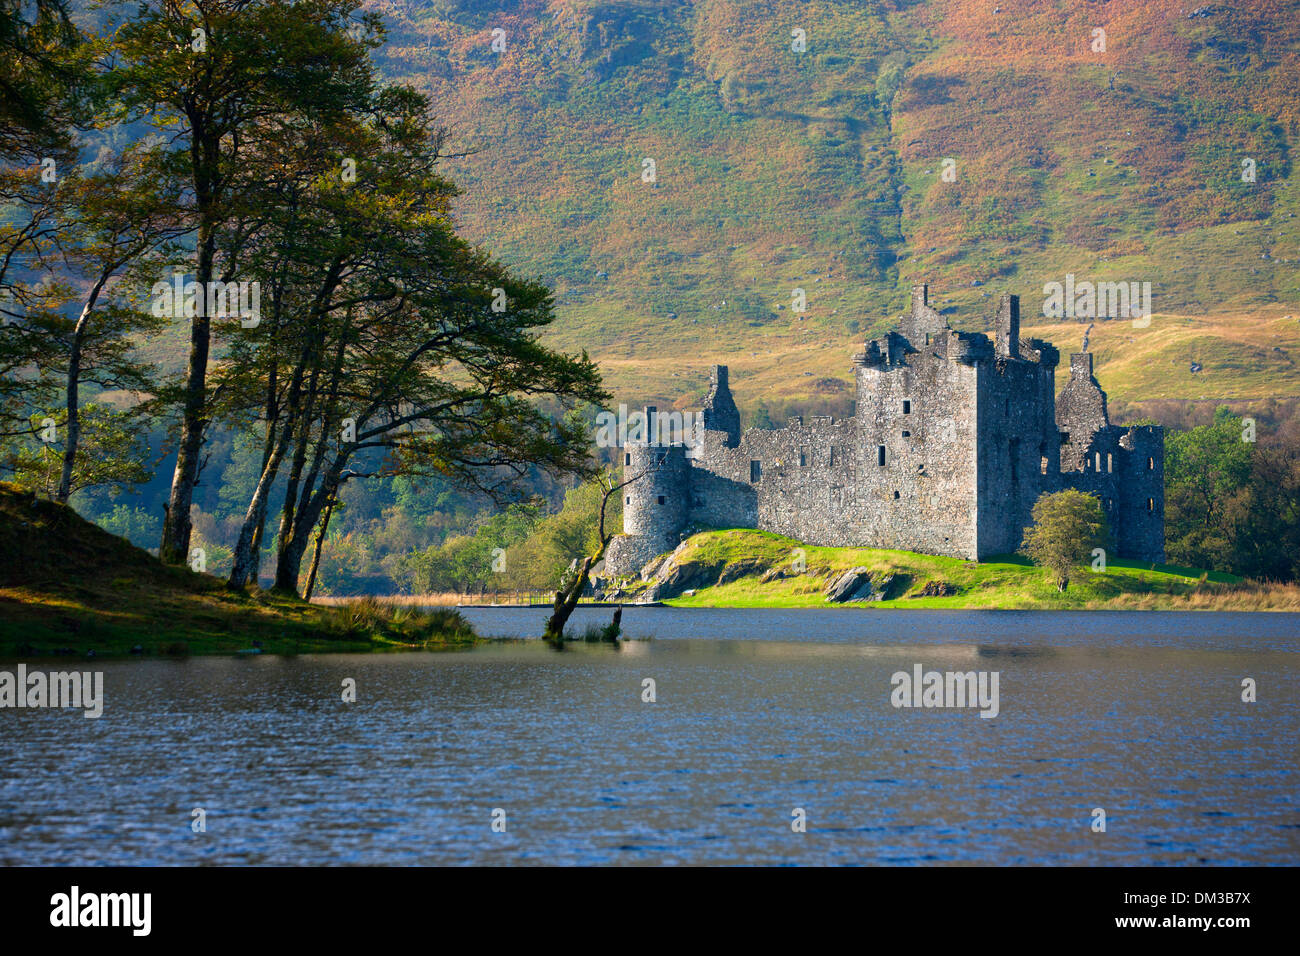 Le Château de Kilchurn, Grande-Bretagne, Europe, l'Ecosse, Loch Awe, lac, eau, château, ruines, arbres, automne Banque D'Images